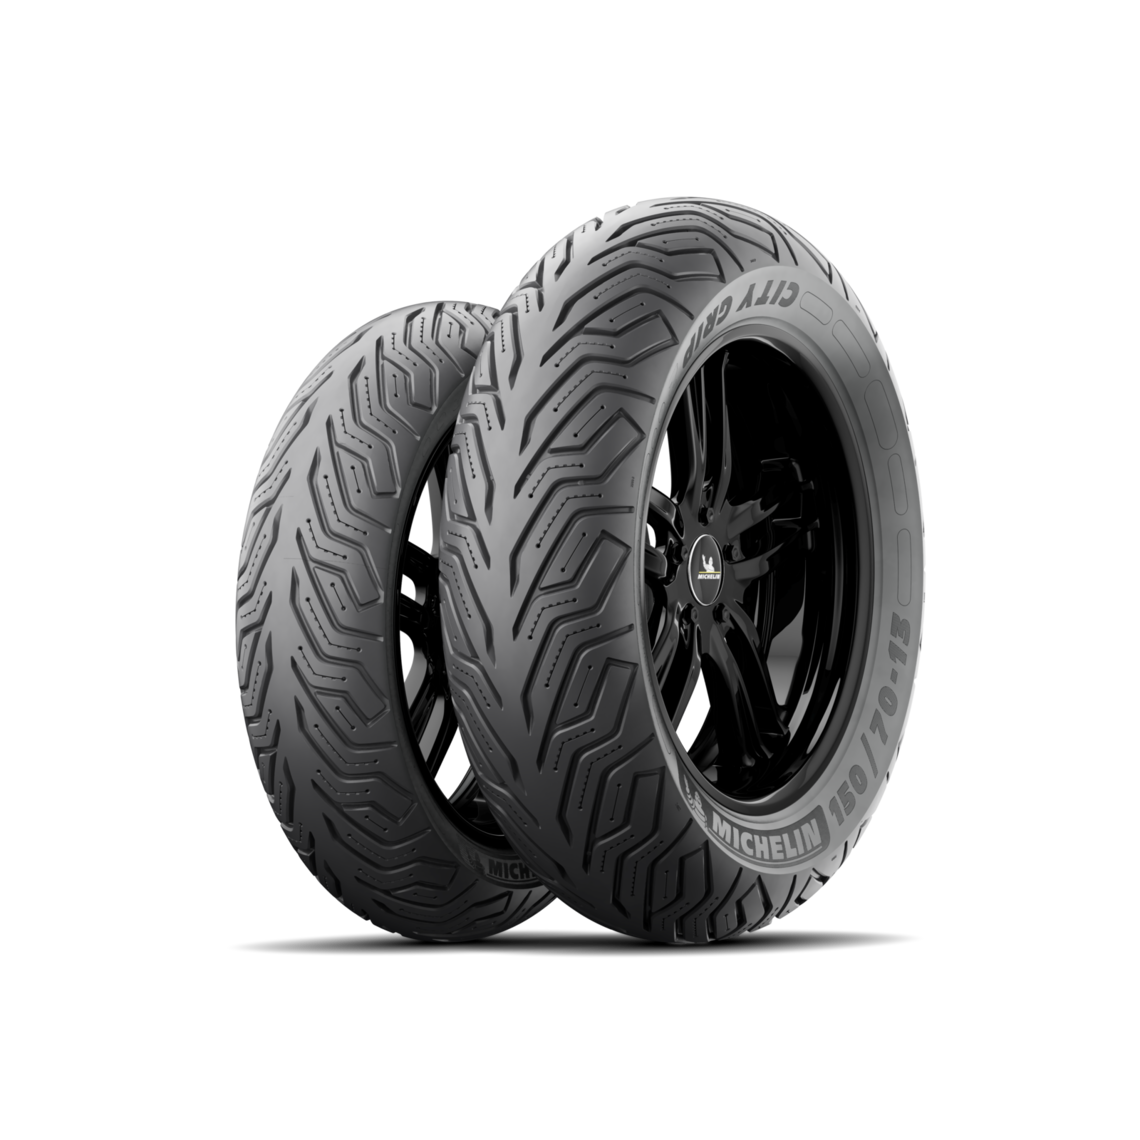 Neumáticos de moto Michelin City Grip 2